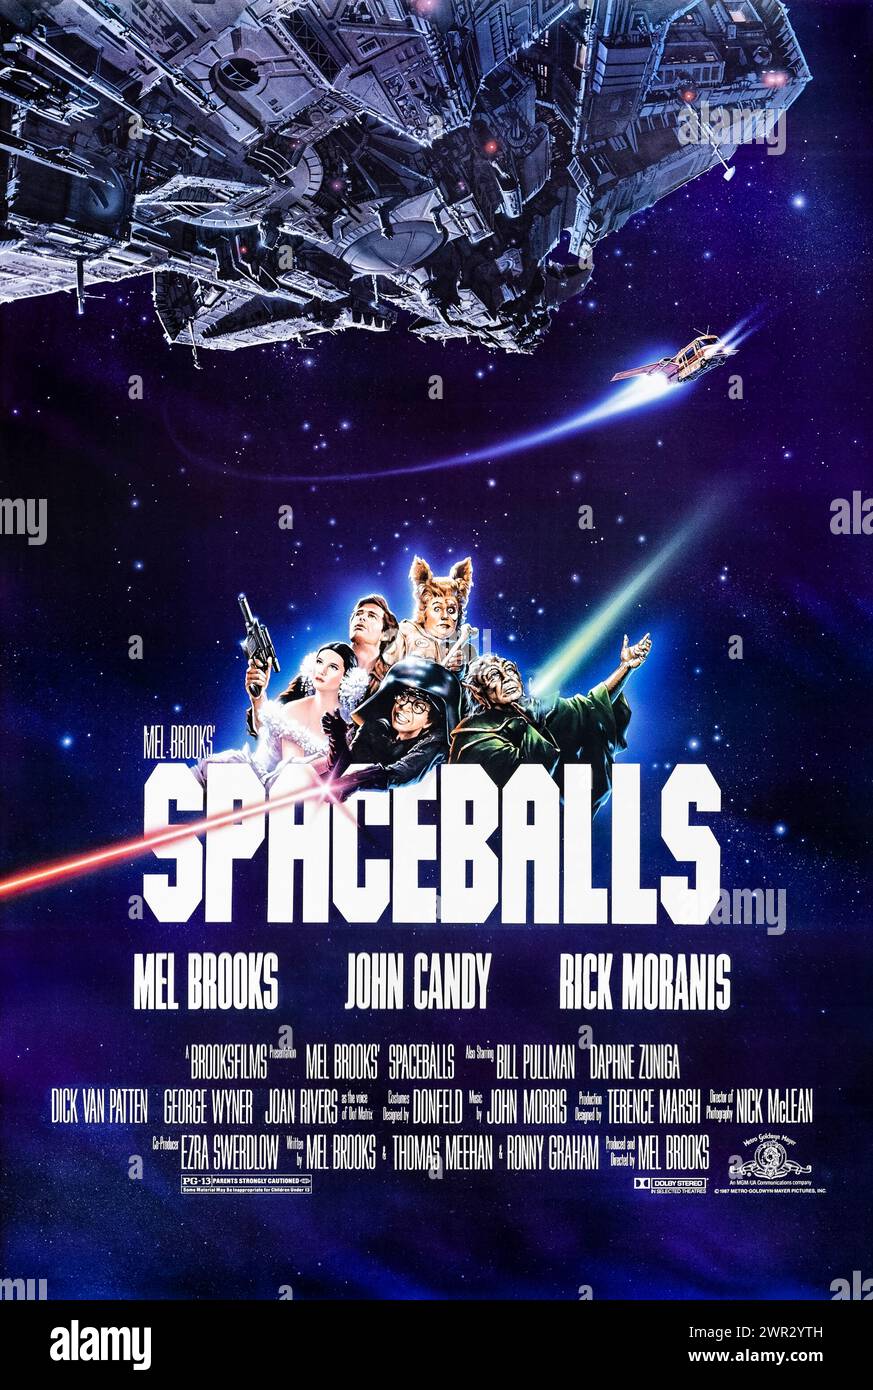 Spaceballs (1987) von Mel Brooks mit Mel Brooks, John Candy und Rick Moranis. Klassische Sci-fi-Parodie, möge die Farce mit dir sein! Foto eines Original-Posters aus dem Jahr 1987 (US-1-Blatt). ***NUR REDAKTIONELLE VERWENDUNG*** Credit: BFA / Metro-Goldwyn-Mayer Stockfoto